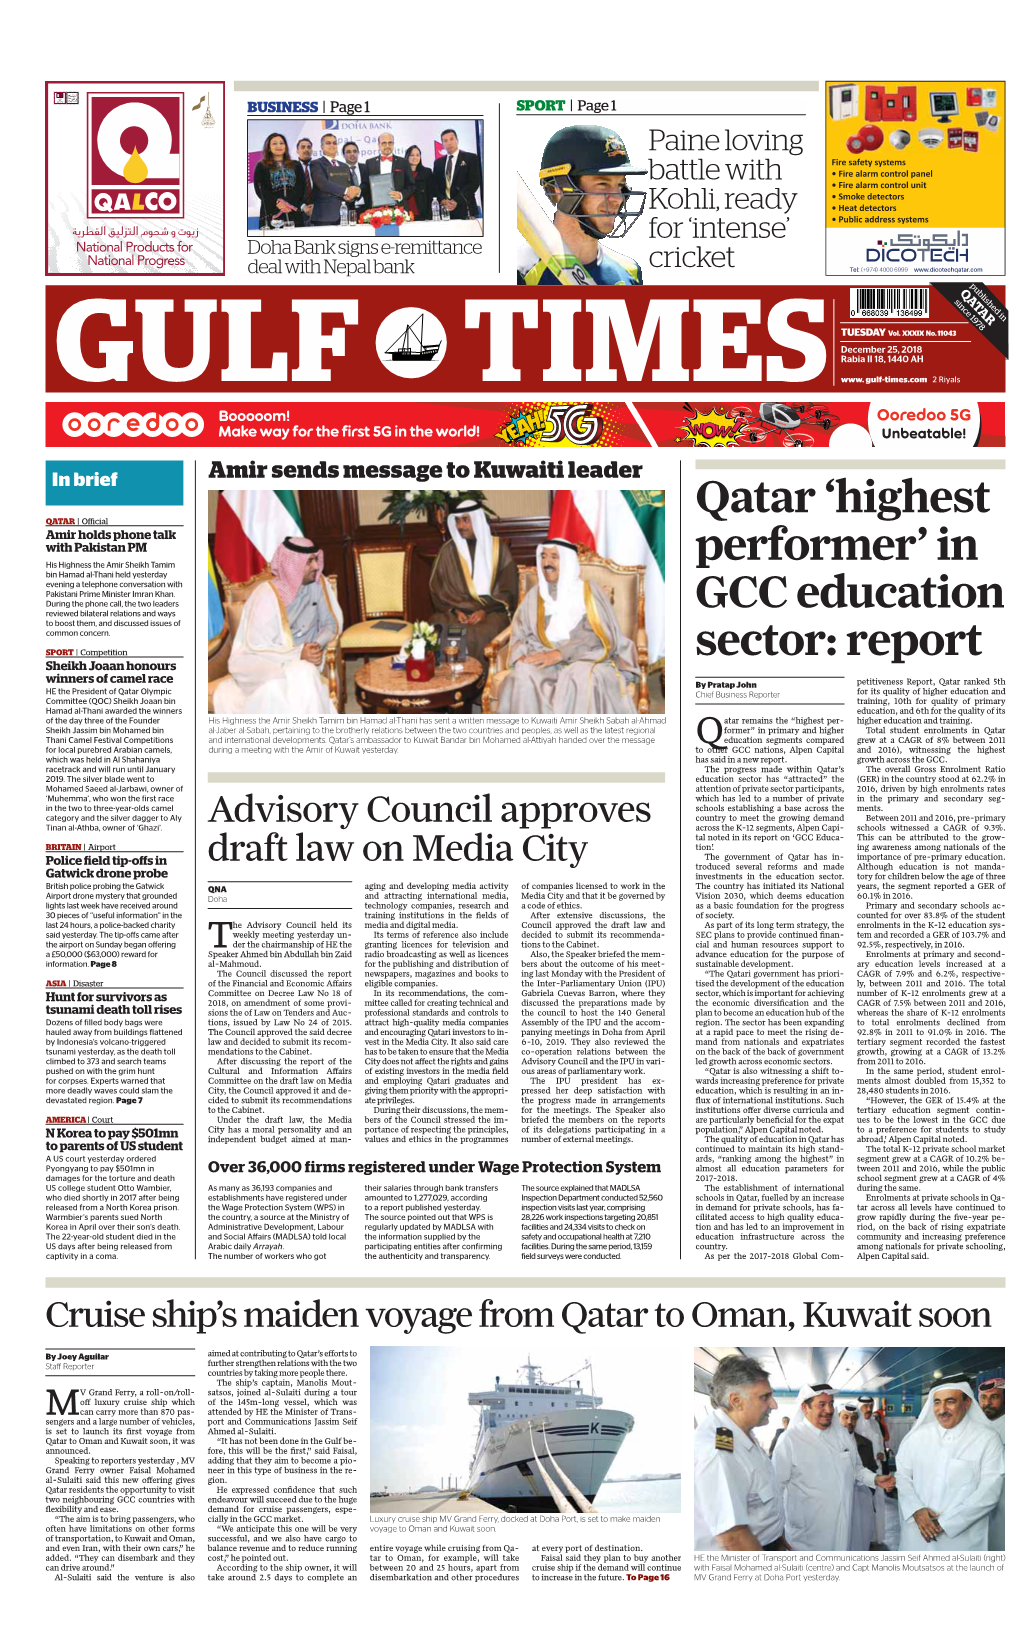 Qatar 'Highest Performer' in GCC Education Sector